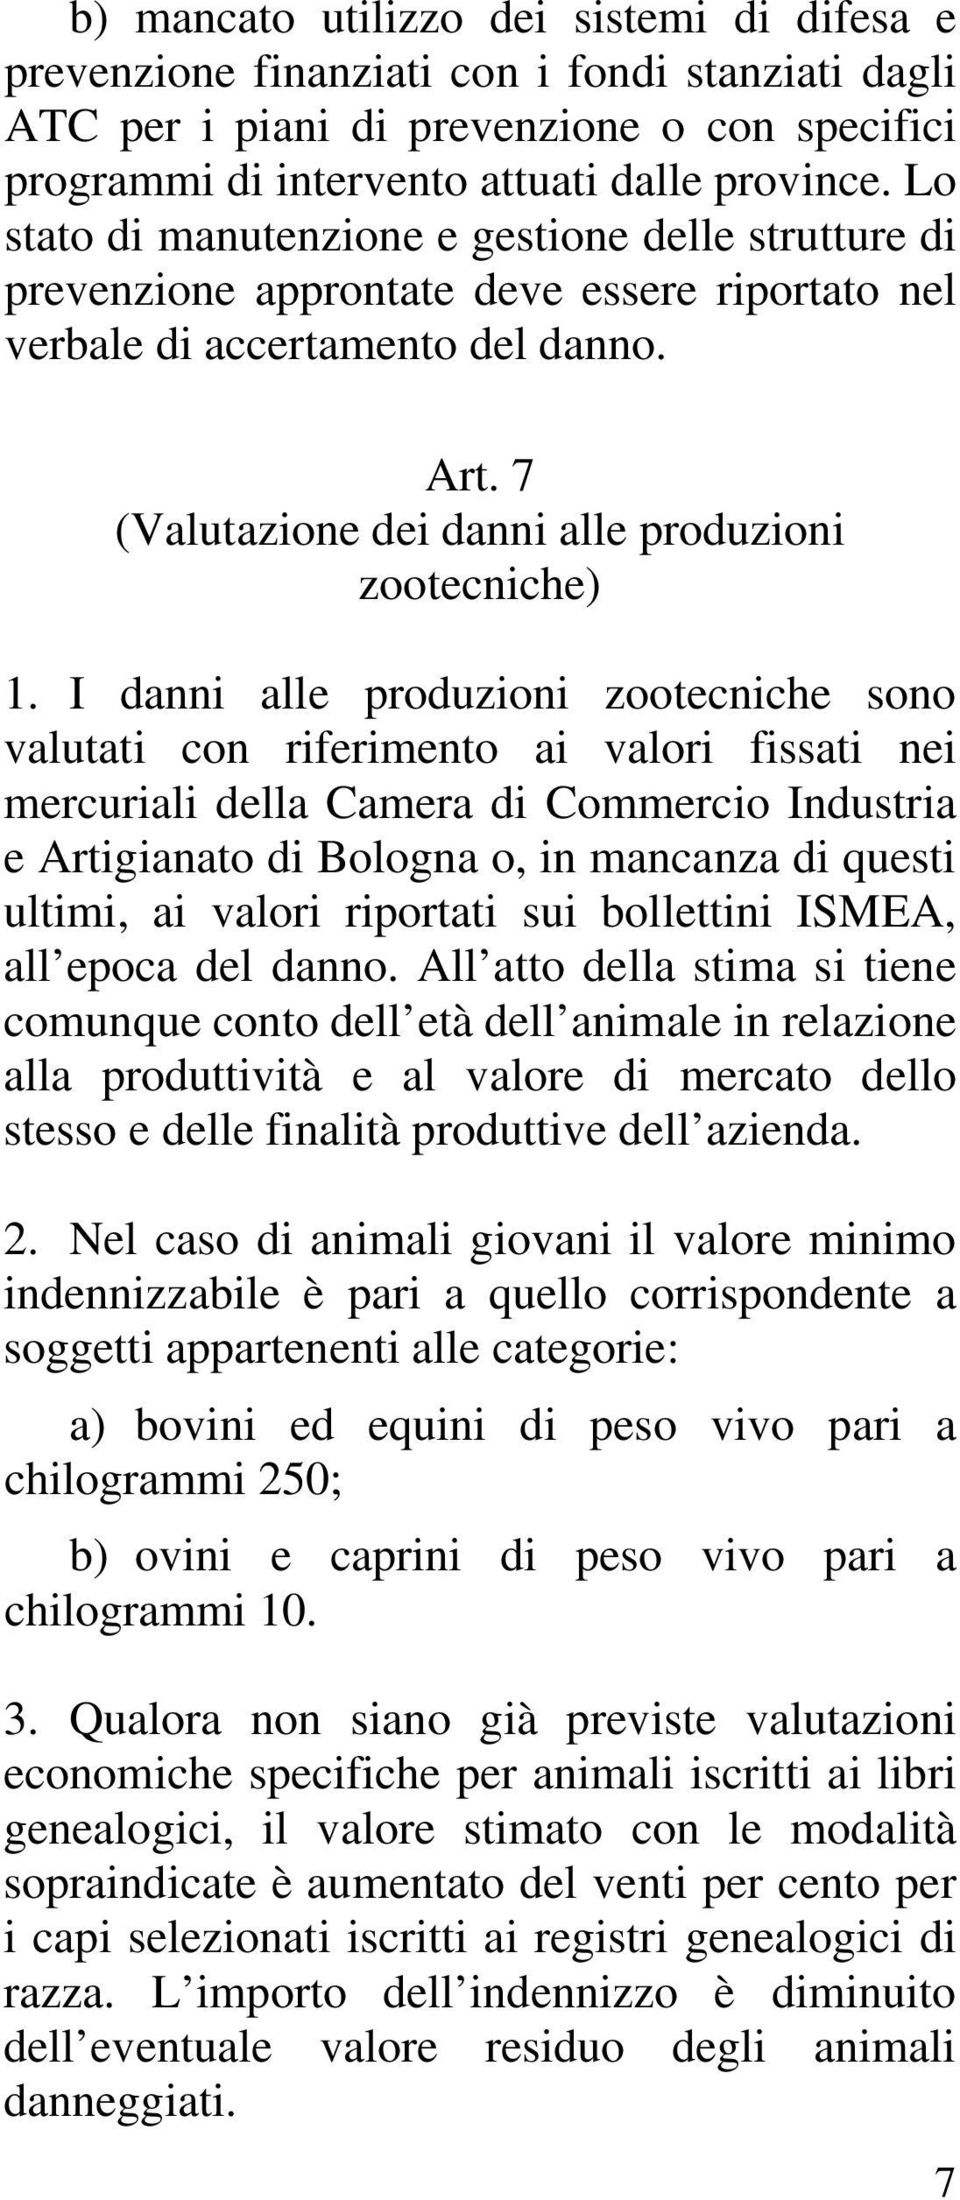 I danni alle produzioni zootecniche sono valutati con riferimento ai valori fissati nei mercuriali della Camera di Commercio Industria e Artigianato di Bologna o, in mancanza di questi ultimi, ai